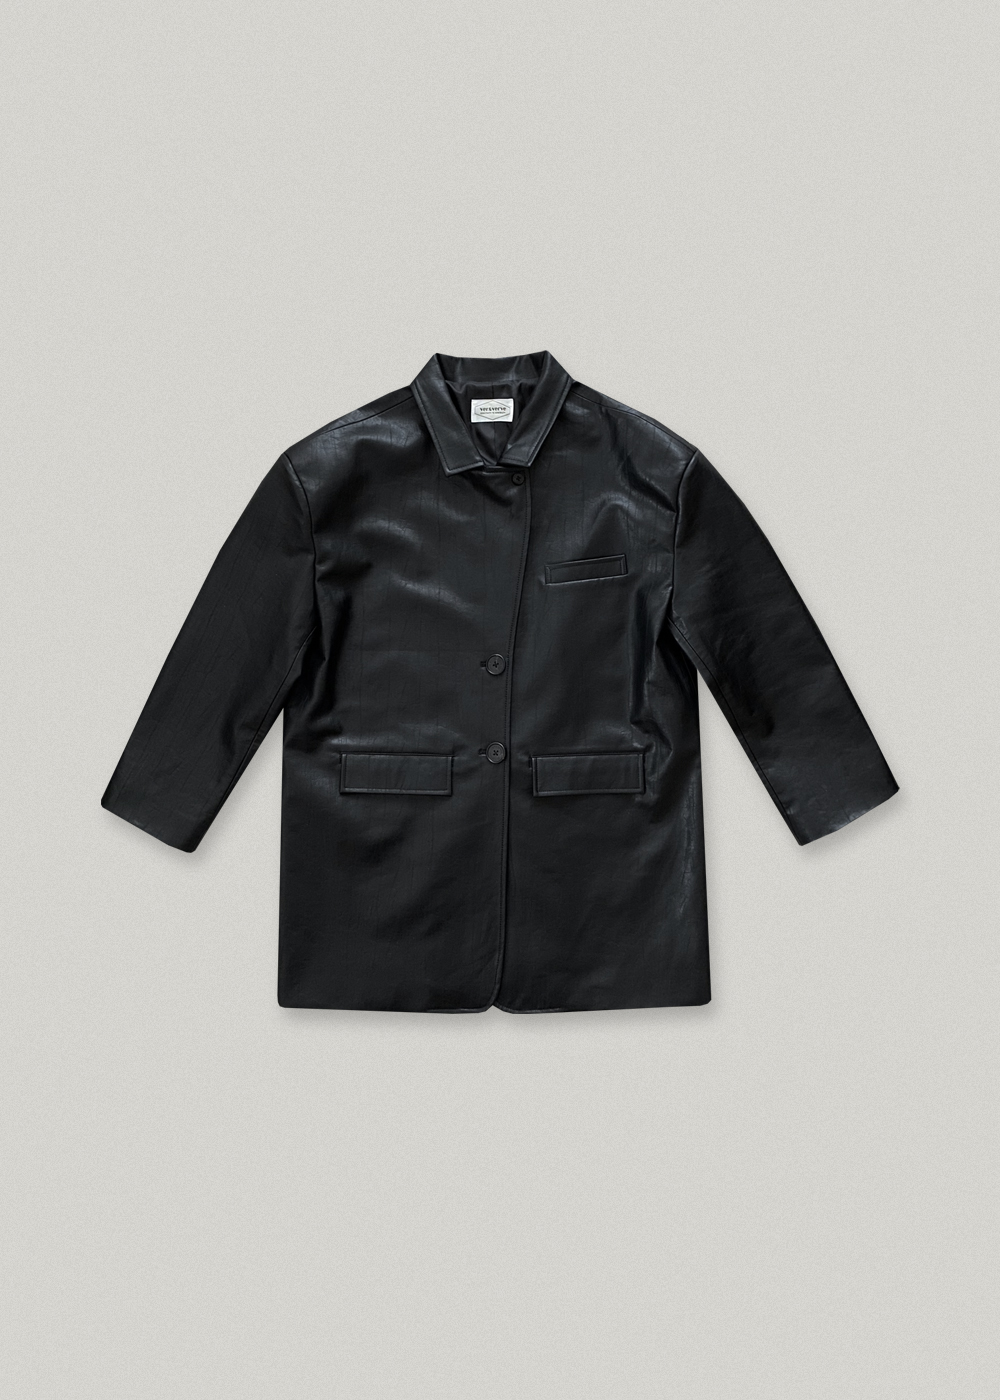 [2nd] Vegan Leather Jacket